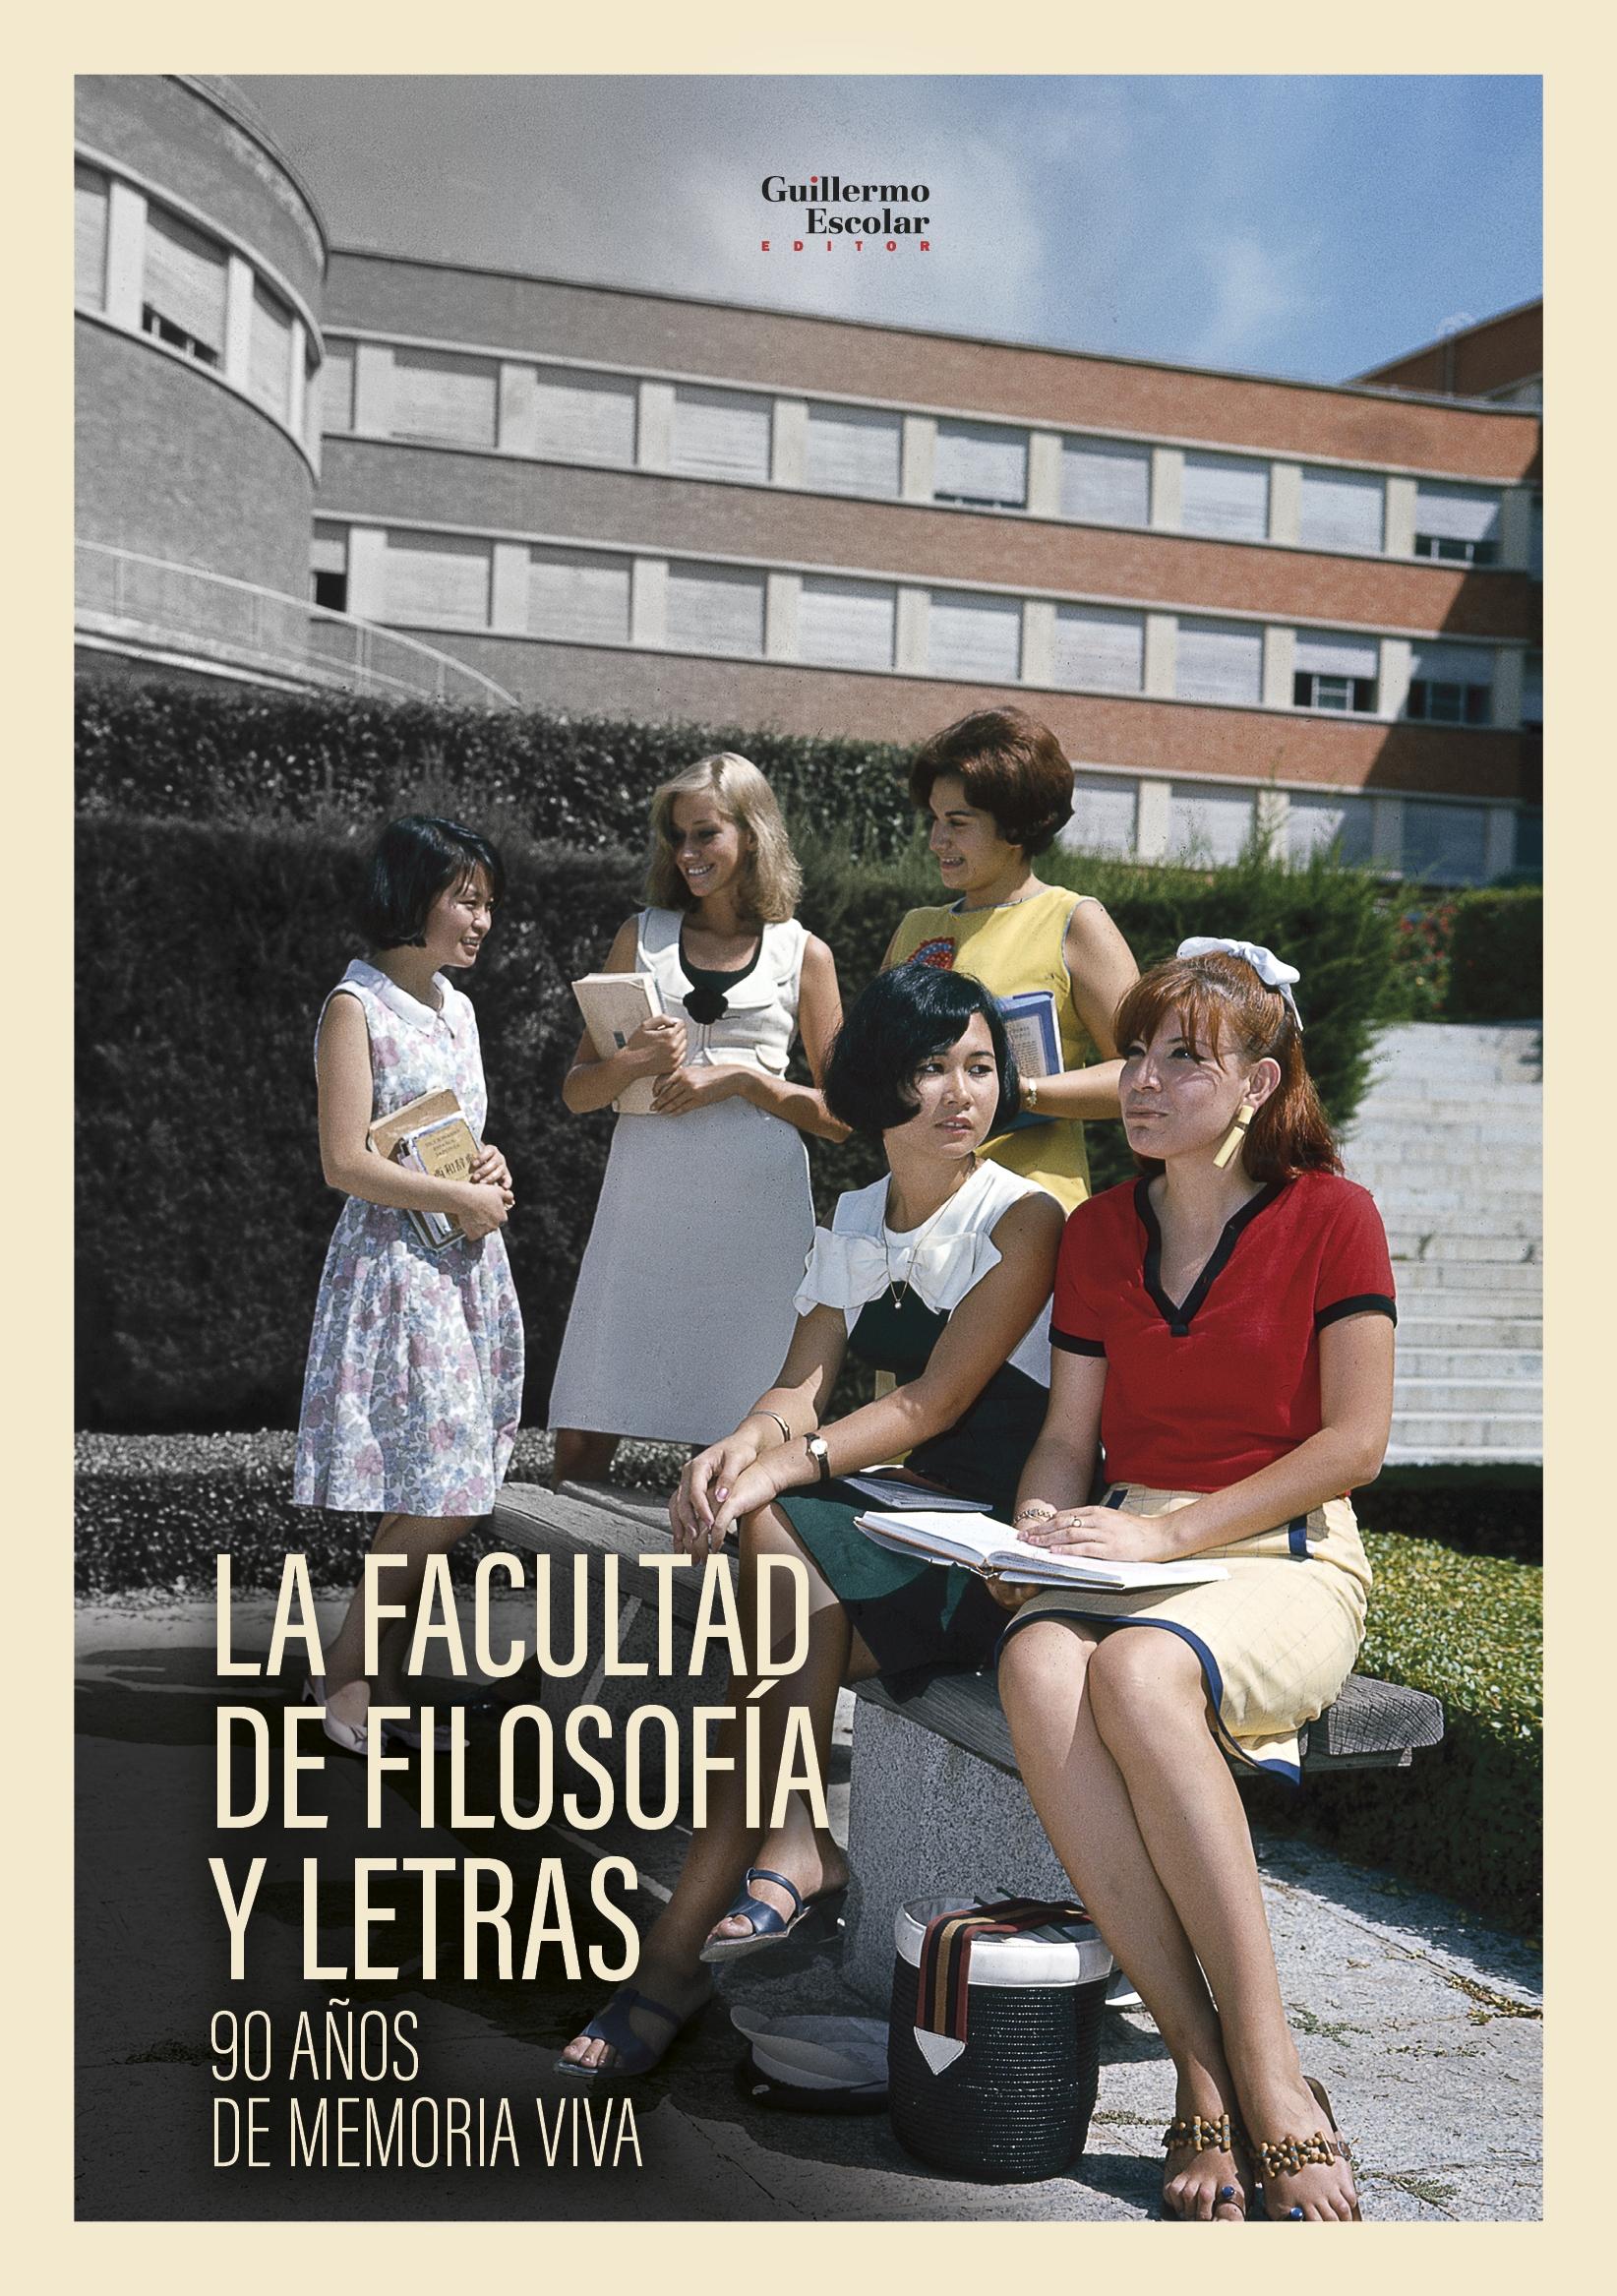 La Facultad de Filosofía y Letras "90 Años de Moria Viva "